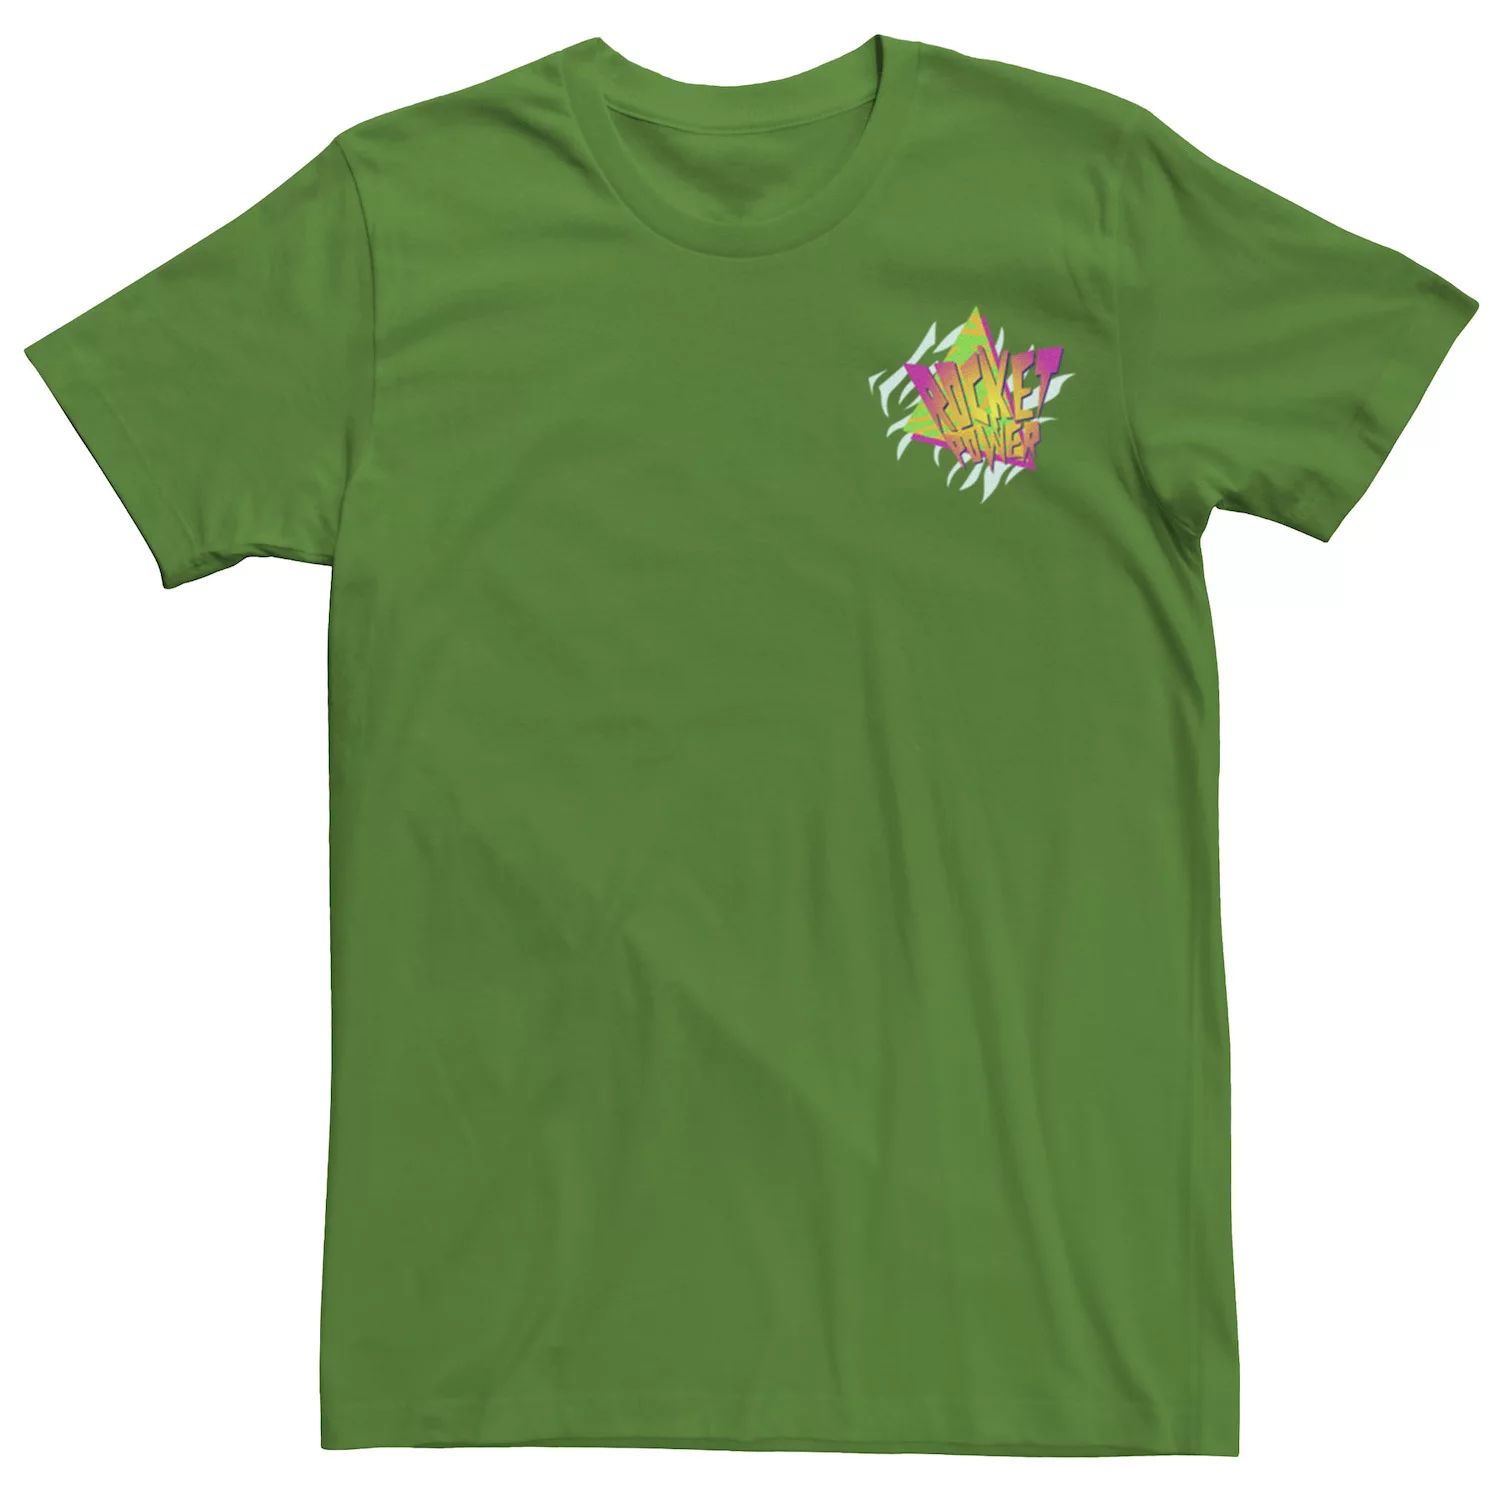 Мужская футболка с треугольным логотипом Rocket Power в стиле ретро и графическим рисунком Nickelodeon